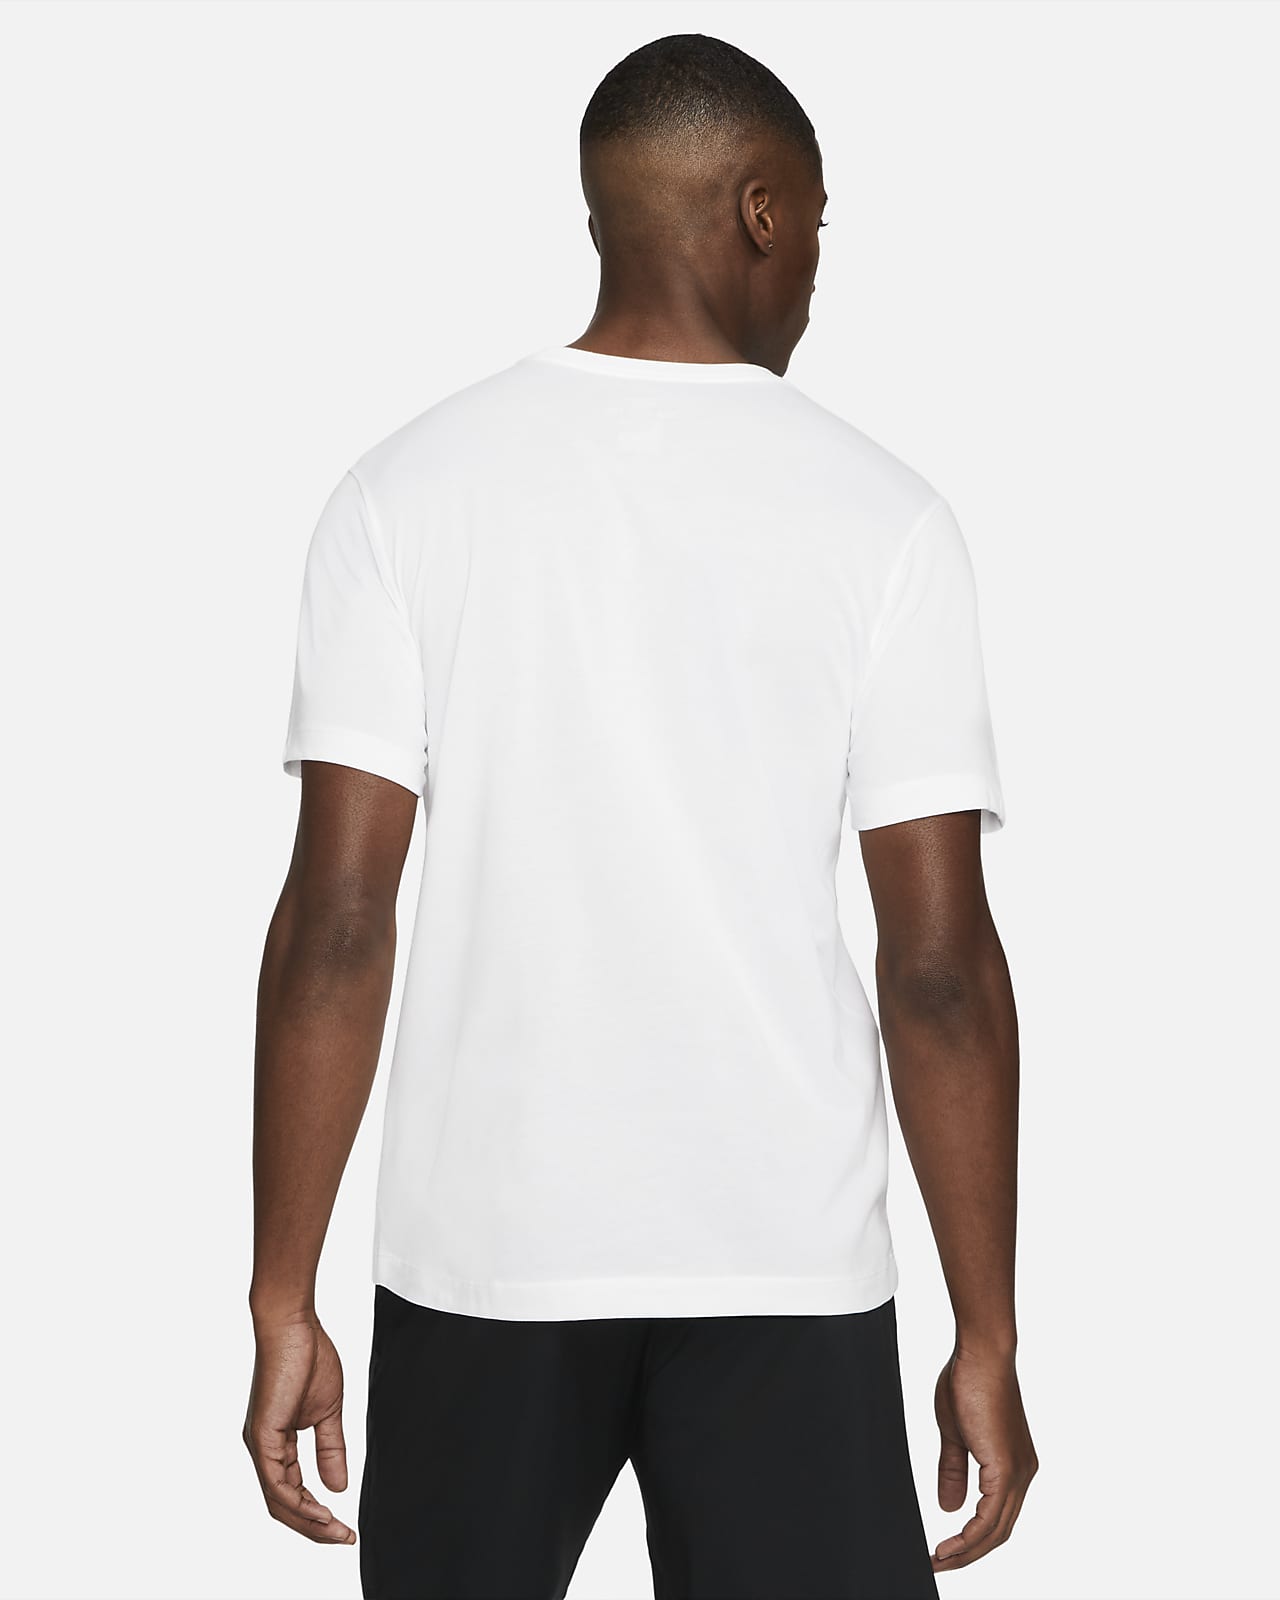 white dri fit t shirt